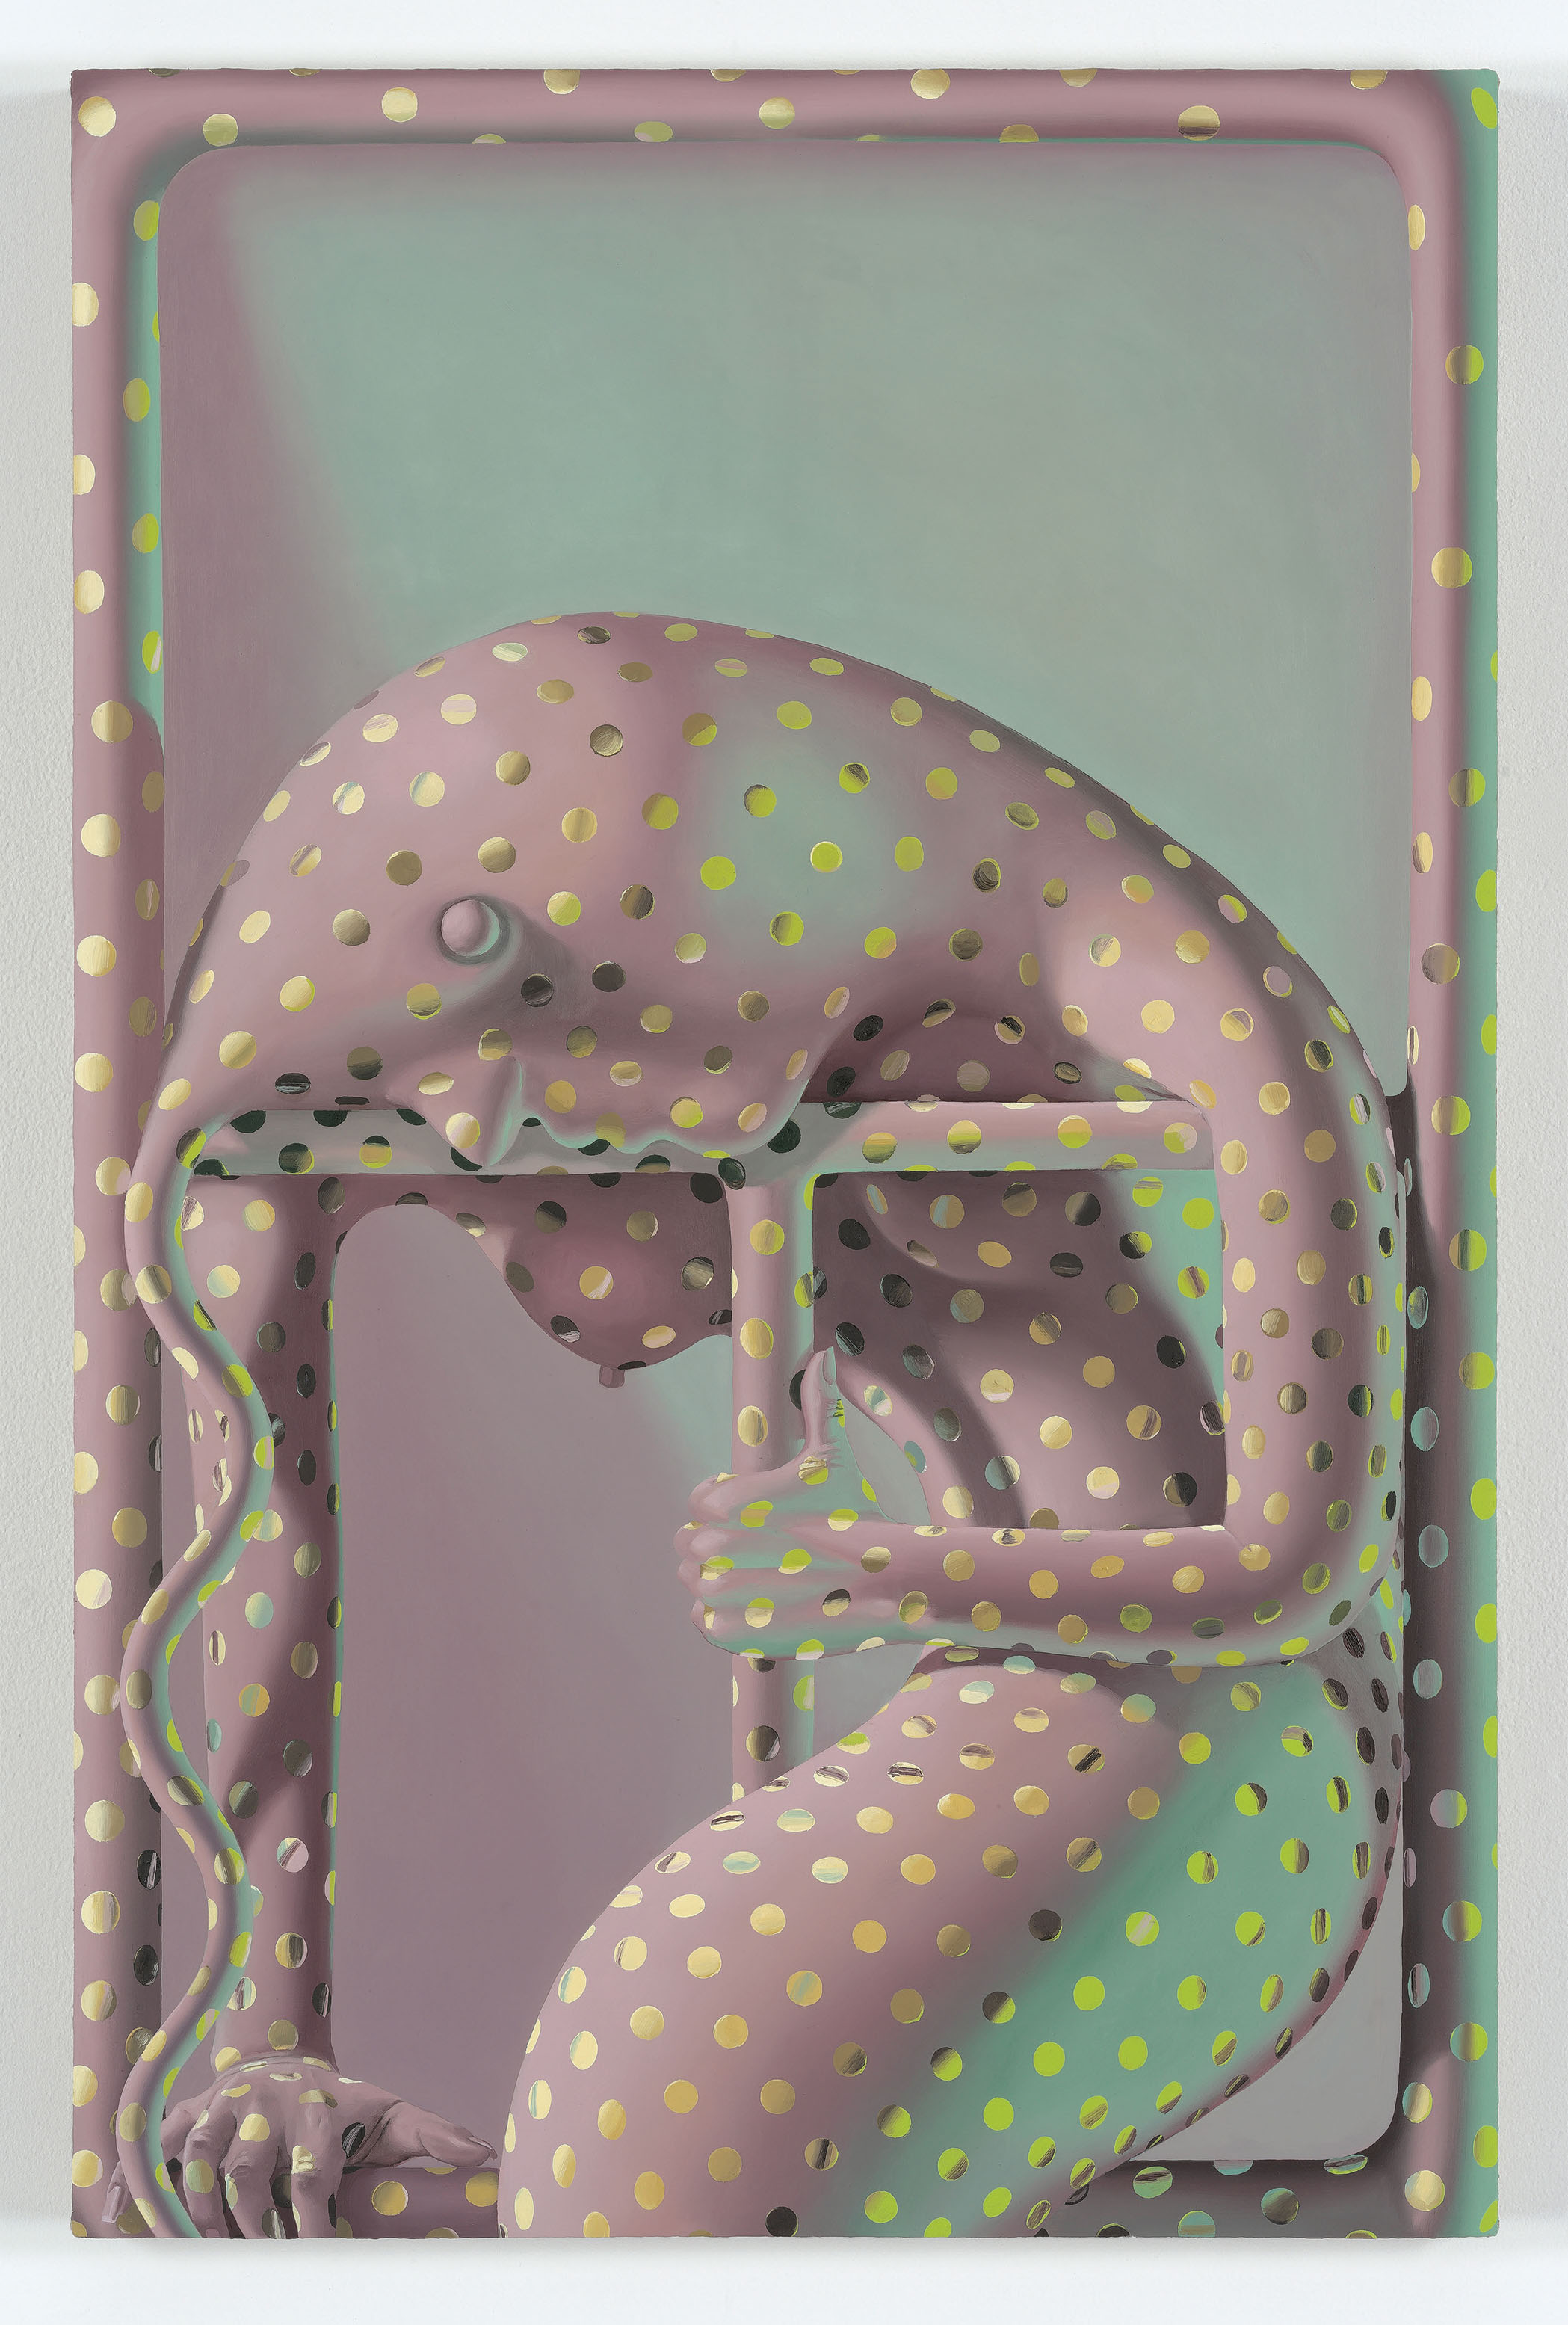  《彻底》, 2015年, 木板上覆布面油画, 81.28 × 53.34 厘米